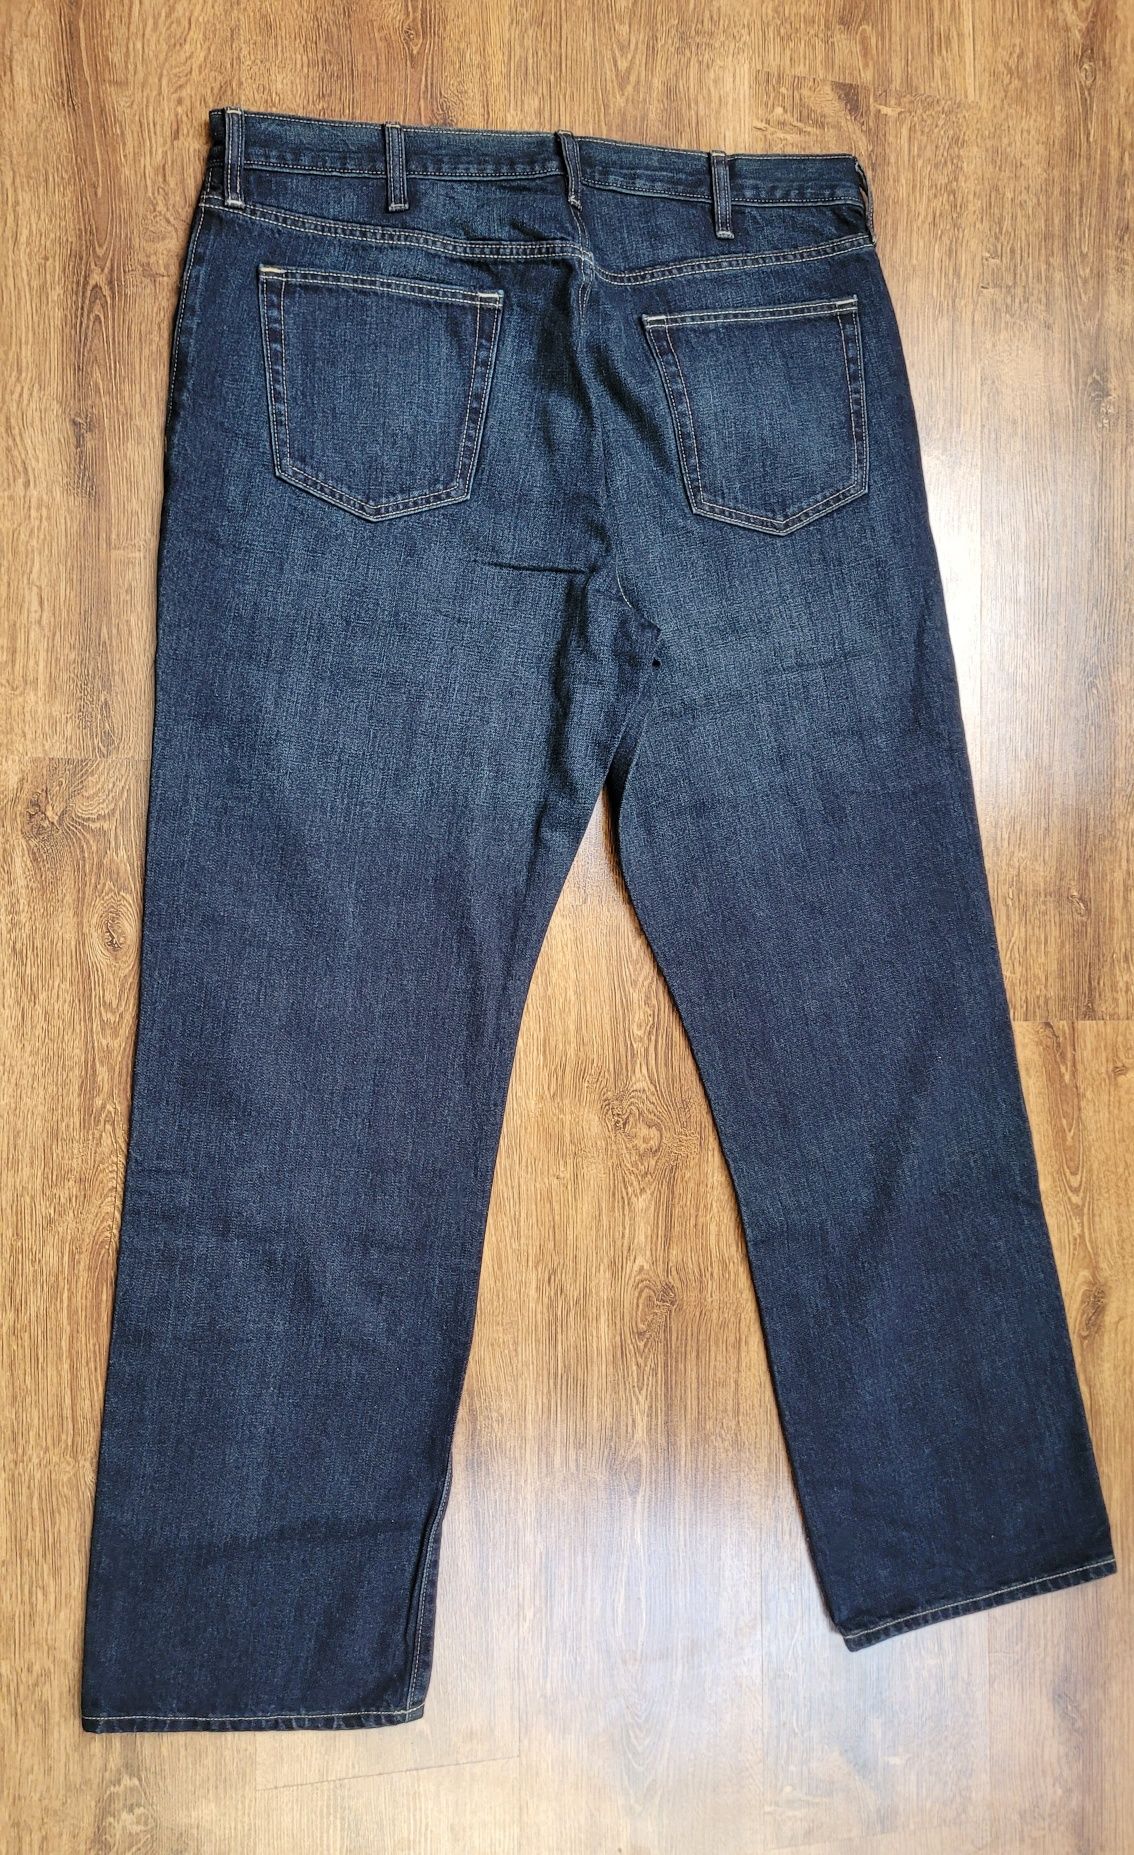 Spodnie jeansy męskie Old Navy W40 L34 3XL  4XL